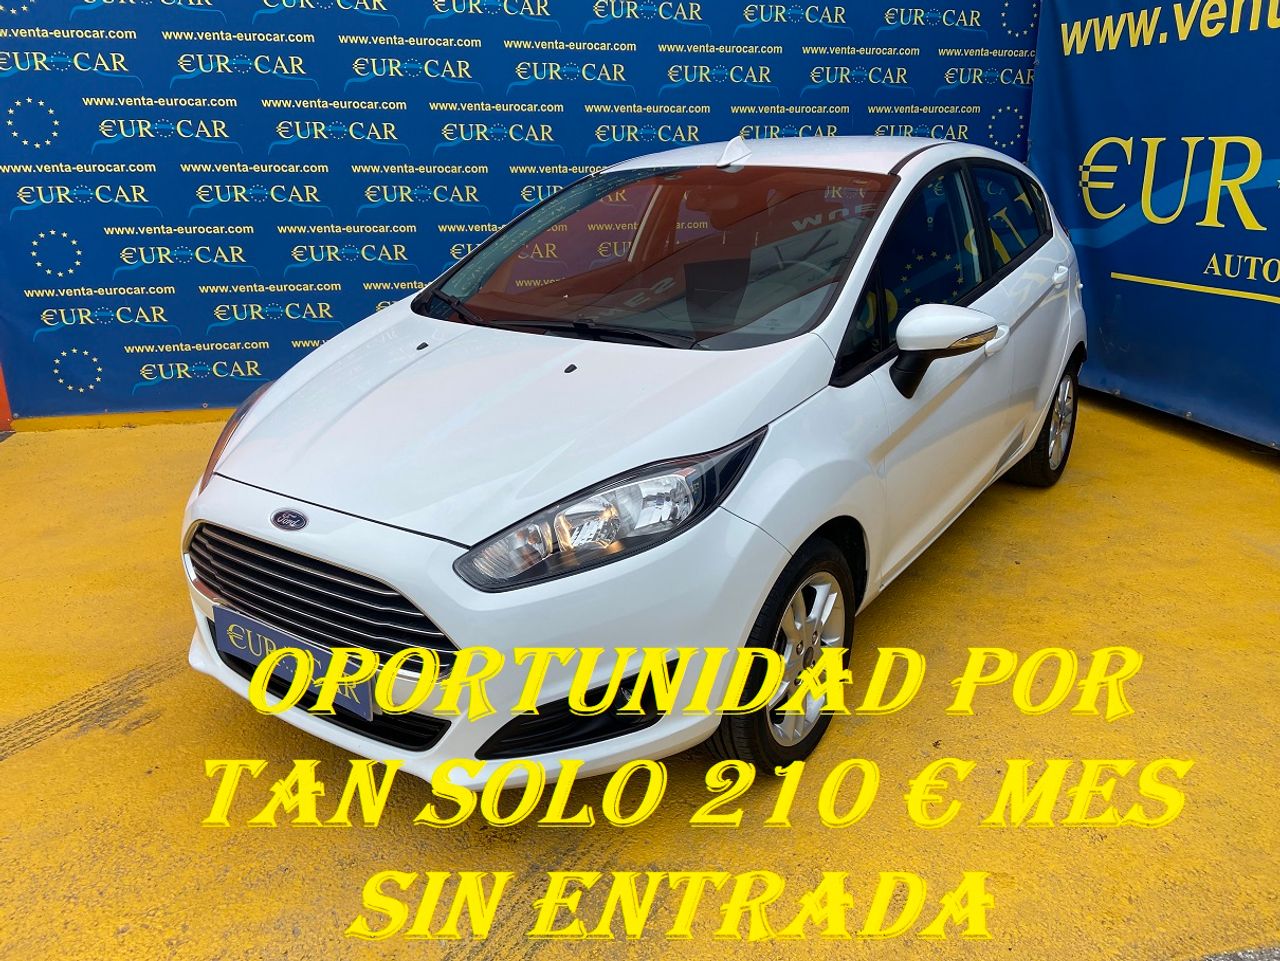 Ford Fiesta ocasión segunda mano 2016 Gasolina por 9.950€ en Alicante